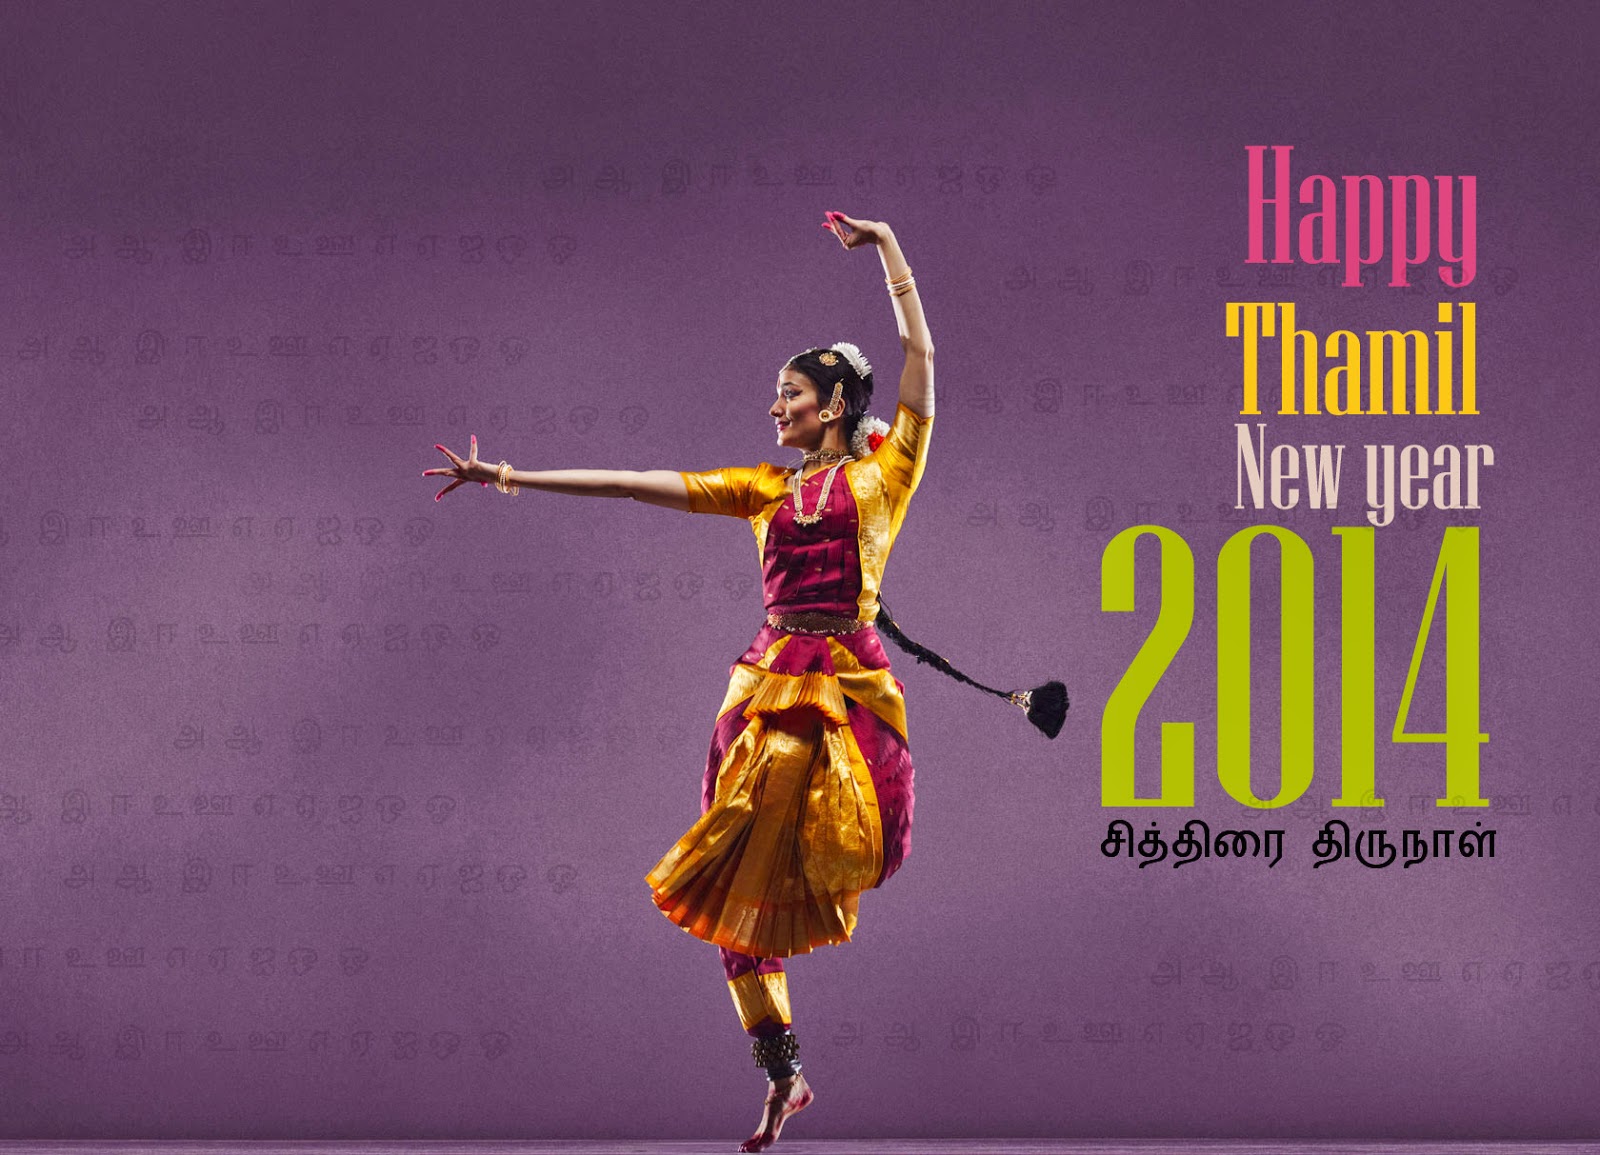 Wallpaper HD: Tamil new year 2014